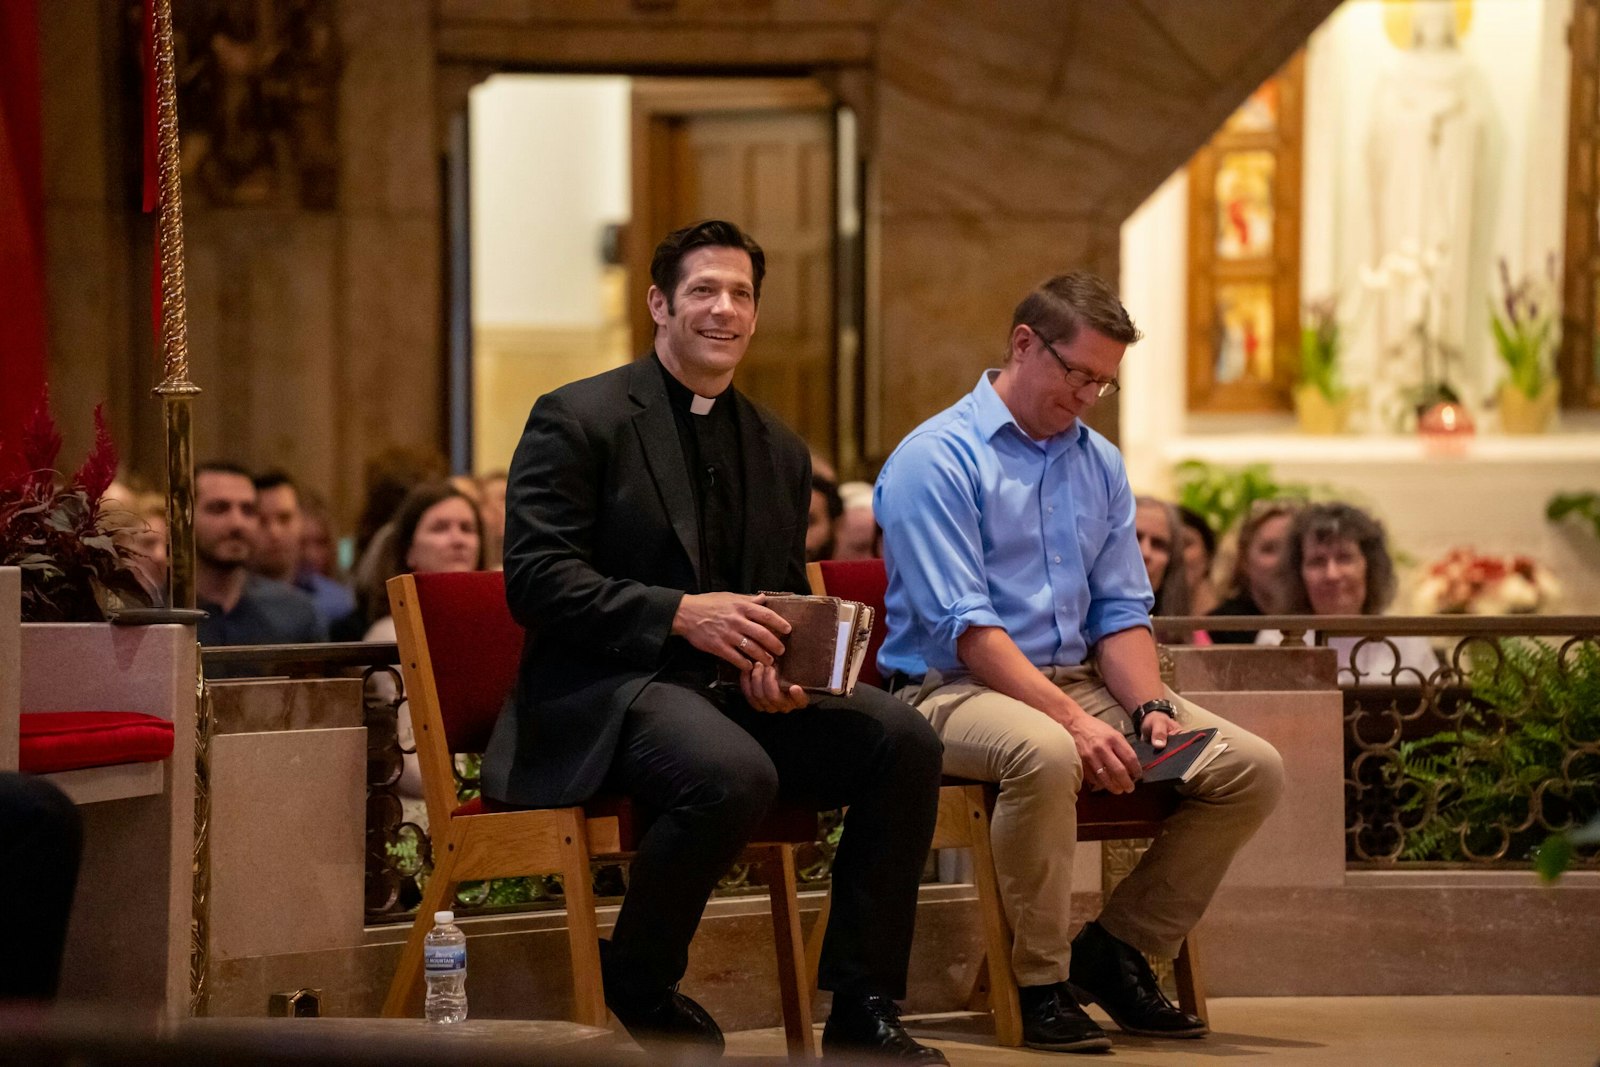 El padre Schmitz sonríe mientras se prepara para hablar durante el evento "Live at the Basilica" junto a Nick Davidson. La serie de oradores trae a conocidos oradores católicos de todo el país para una charla mensual en la basílica de Royal Oak. (Valaurian Waller | Detroit Catholic)